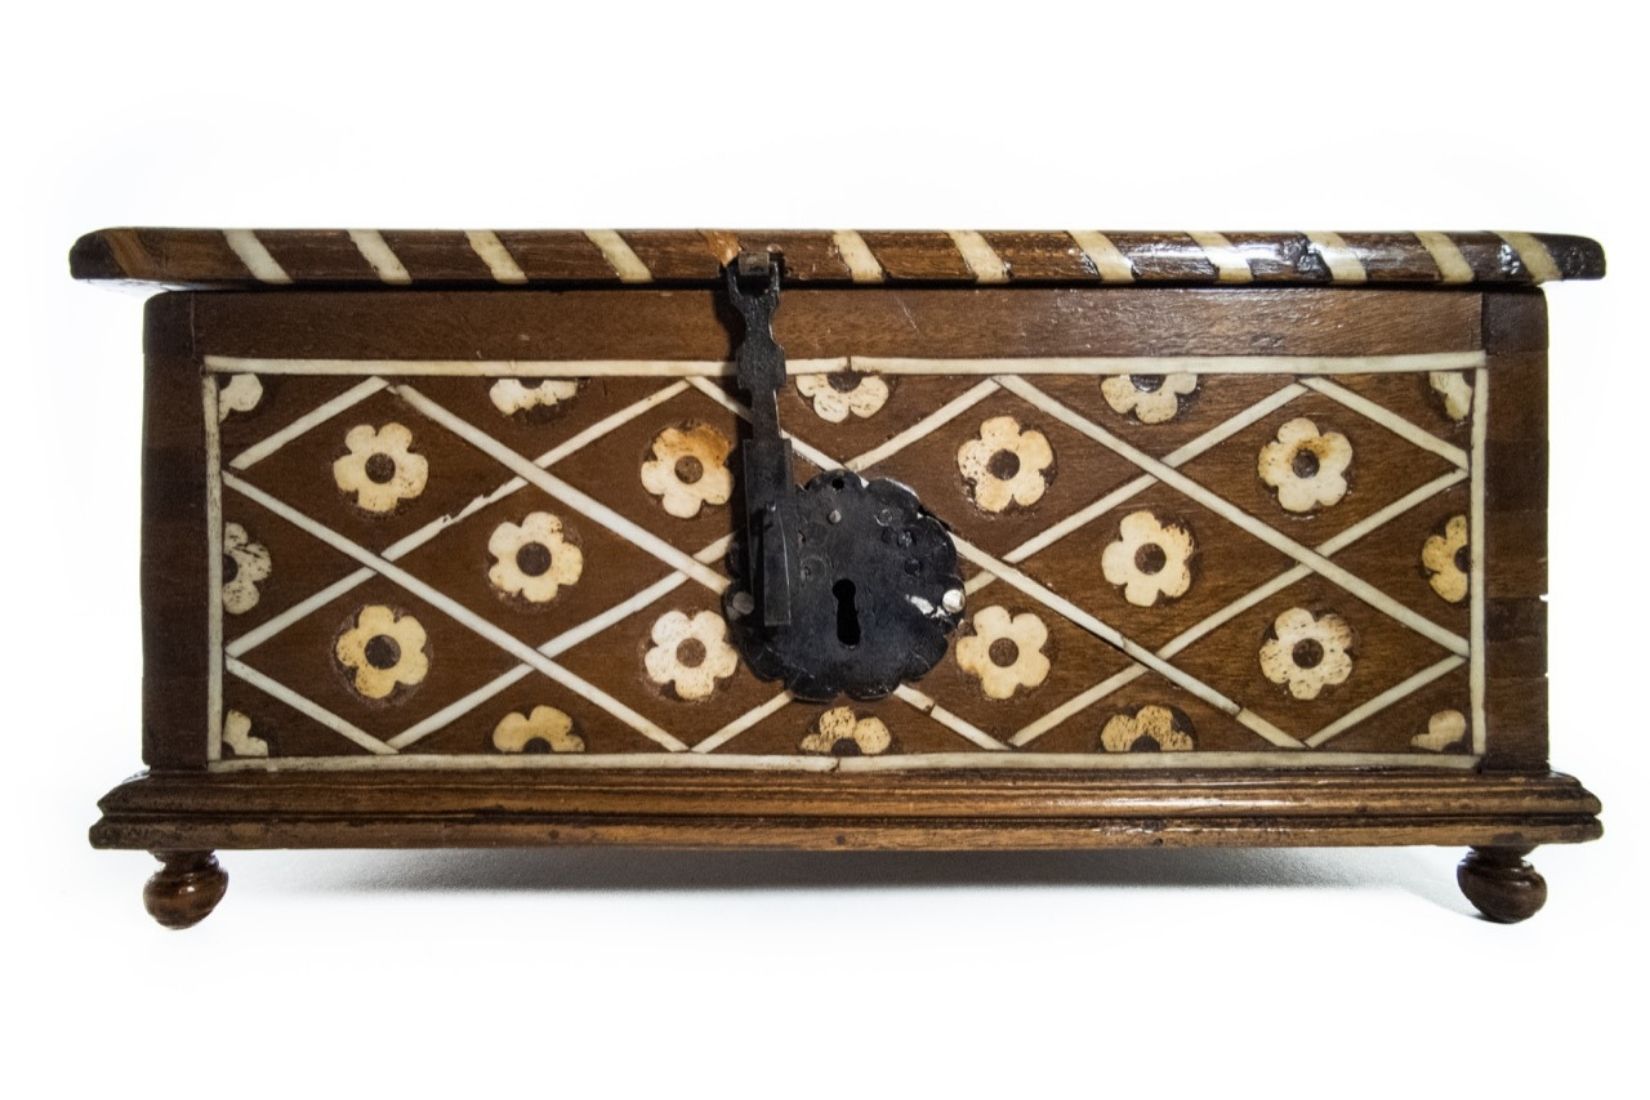 Caja de madera con incrustación de hueso. Artesano y procedencia desconocidos. Col. Marie Thérèse Hermand de Arango. (Foto: Patricia Suárez).